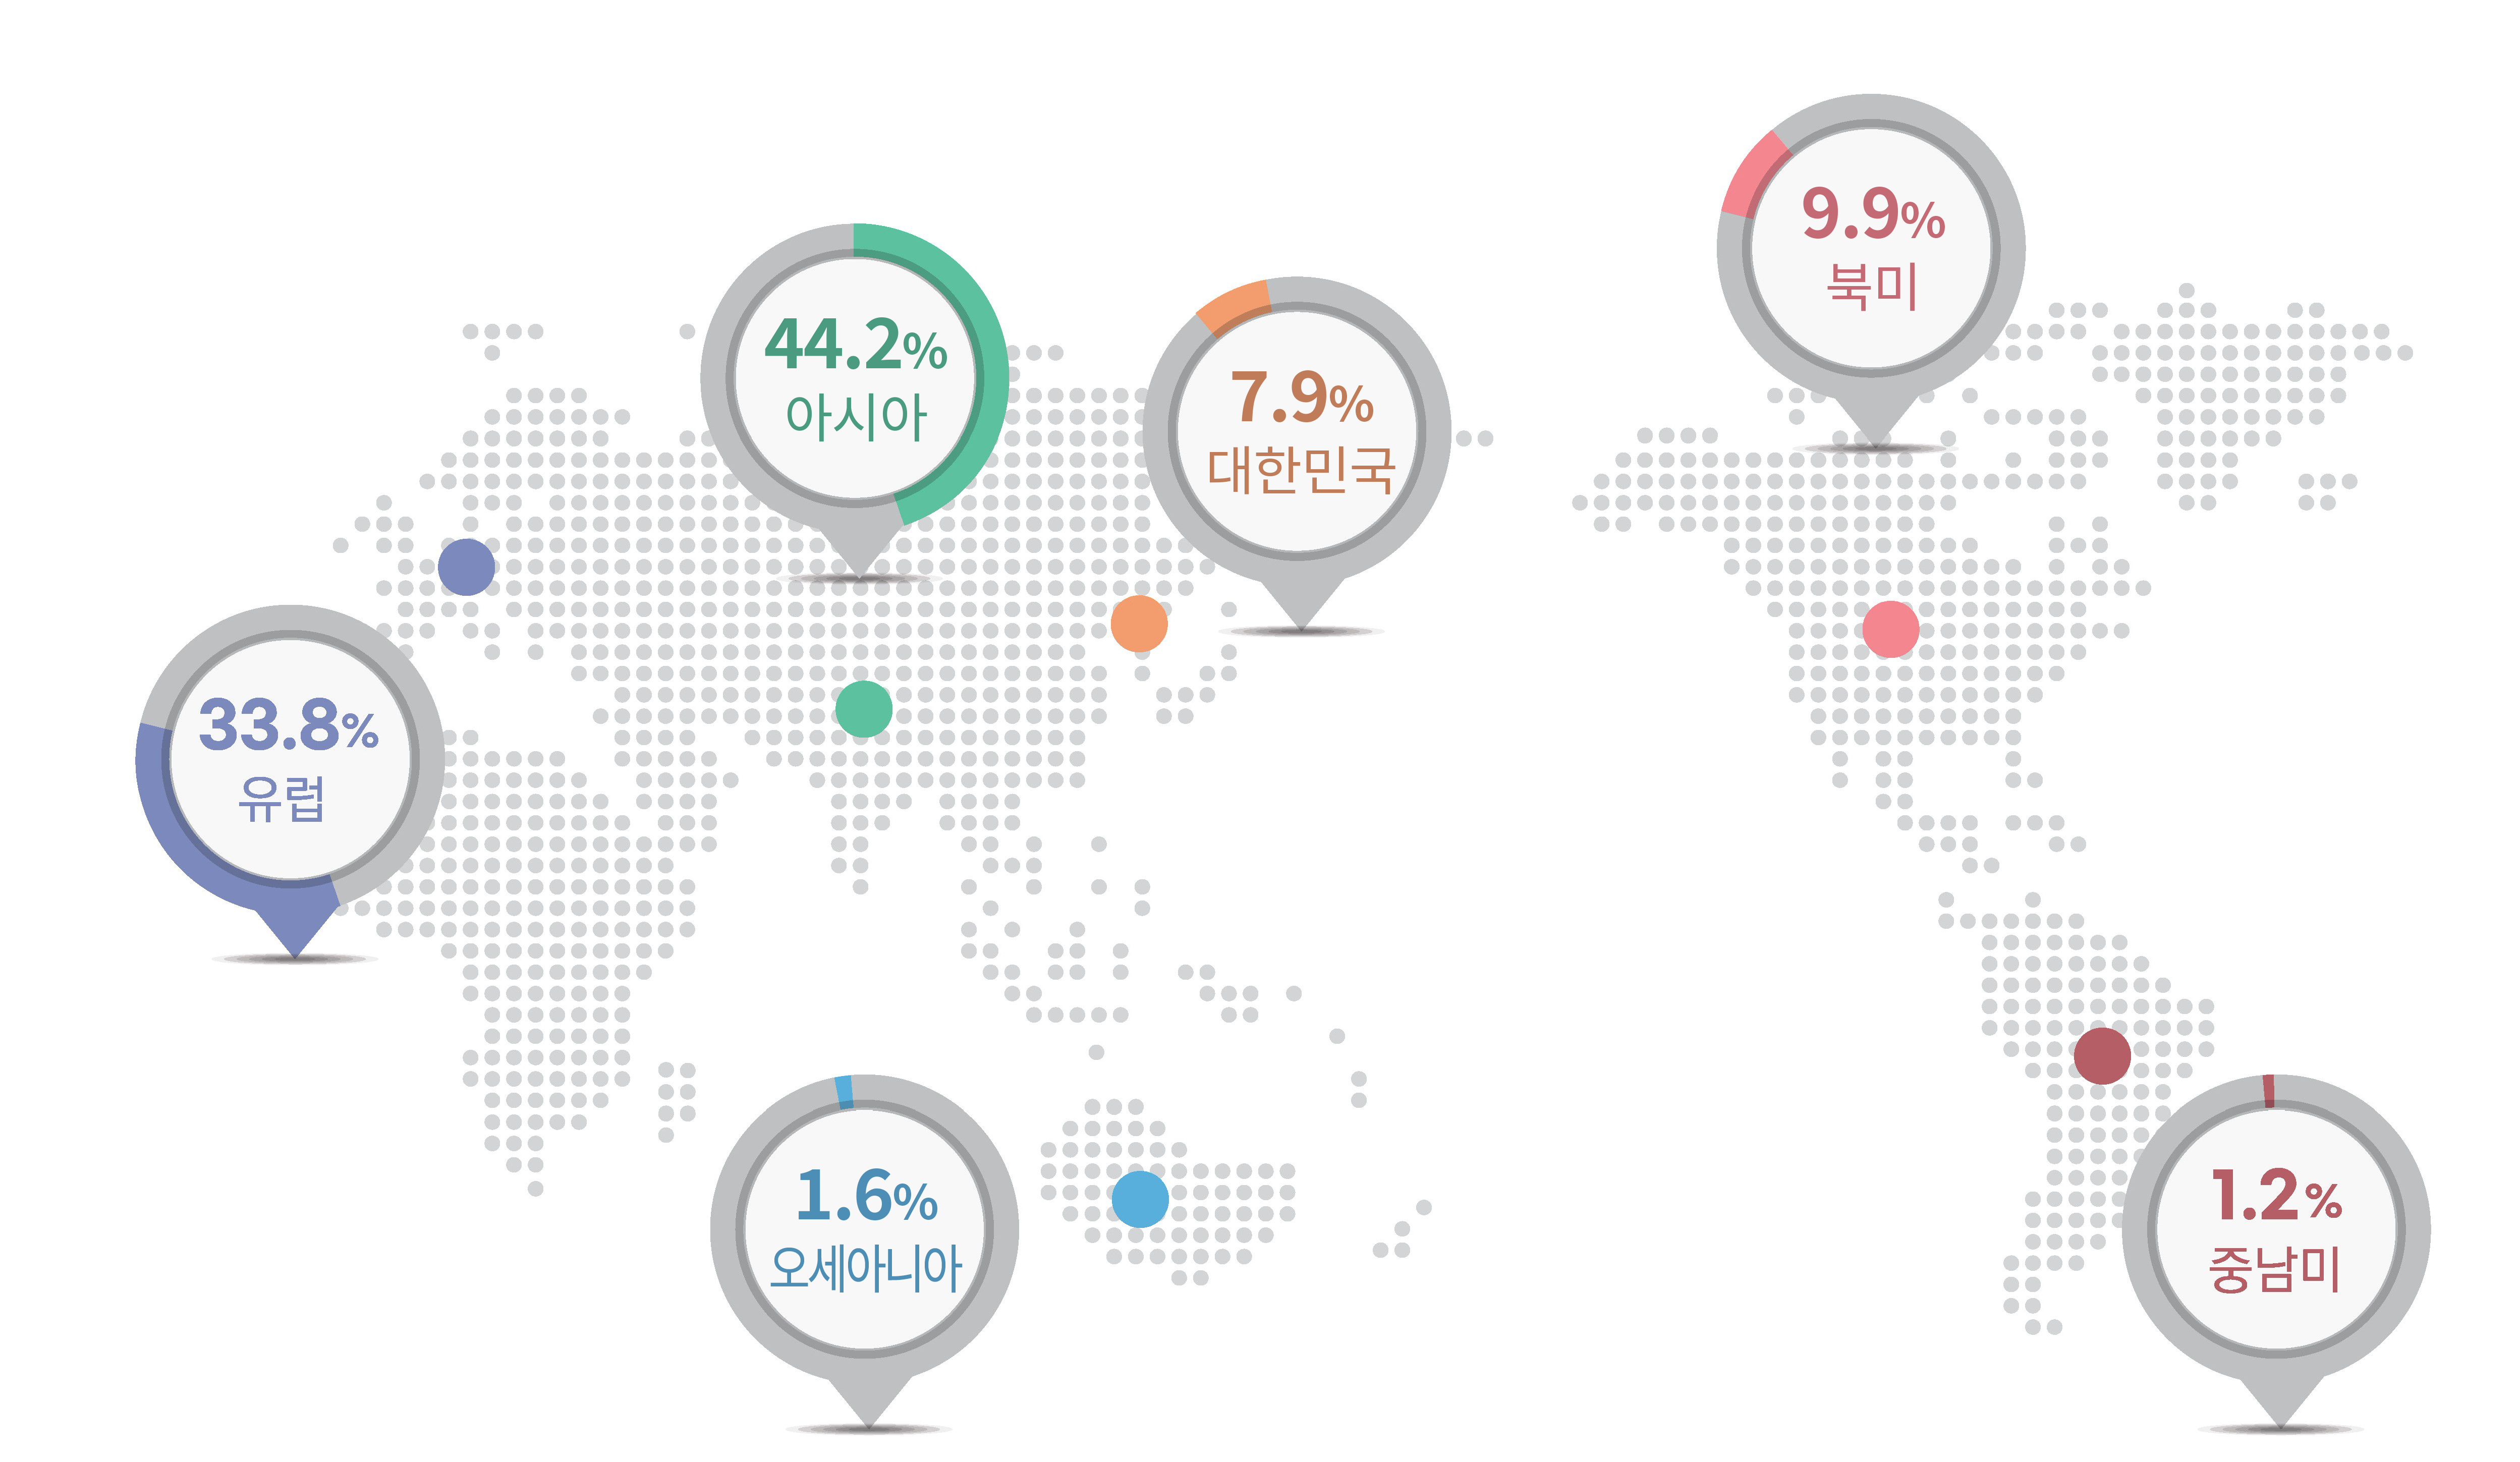 지역별현황 그래프 : 대한민국(7.9%), 아시아(44.2%), 유럽(33.8%), 북미(9.9%), 오세아니아(1.6%), 중남미(1.2%) 입니다.